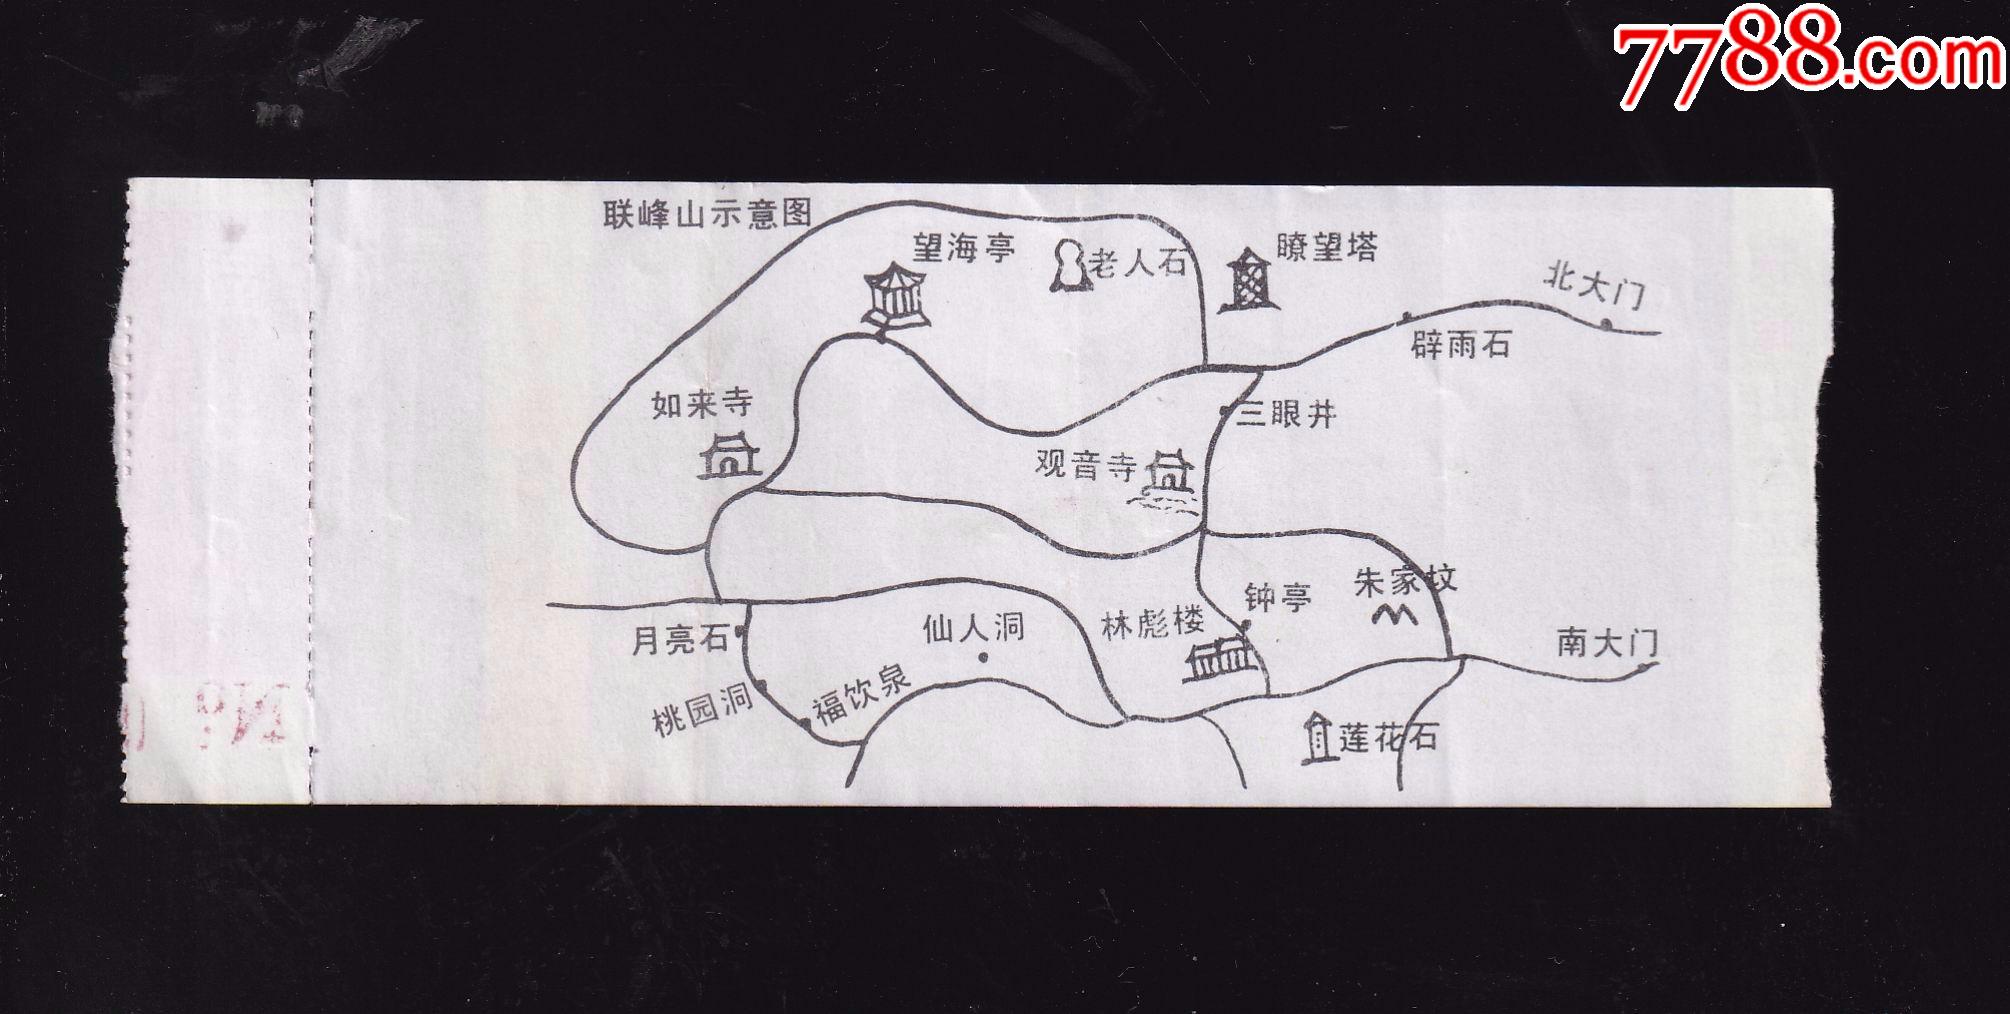 联峰山公园地图图片